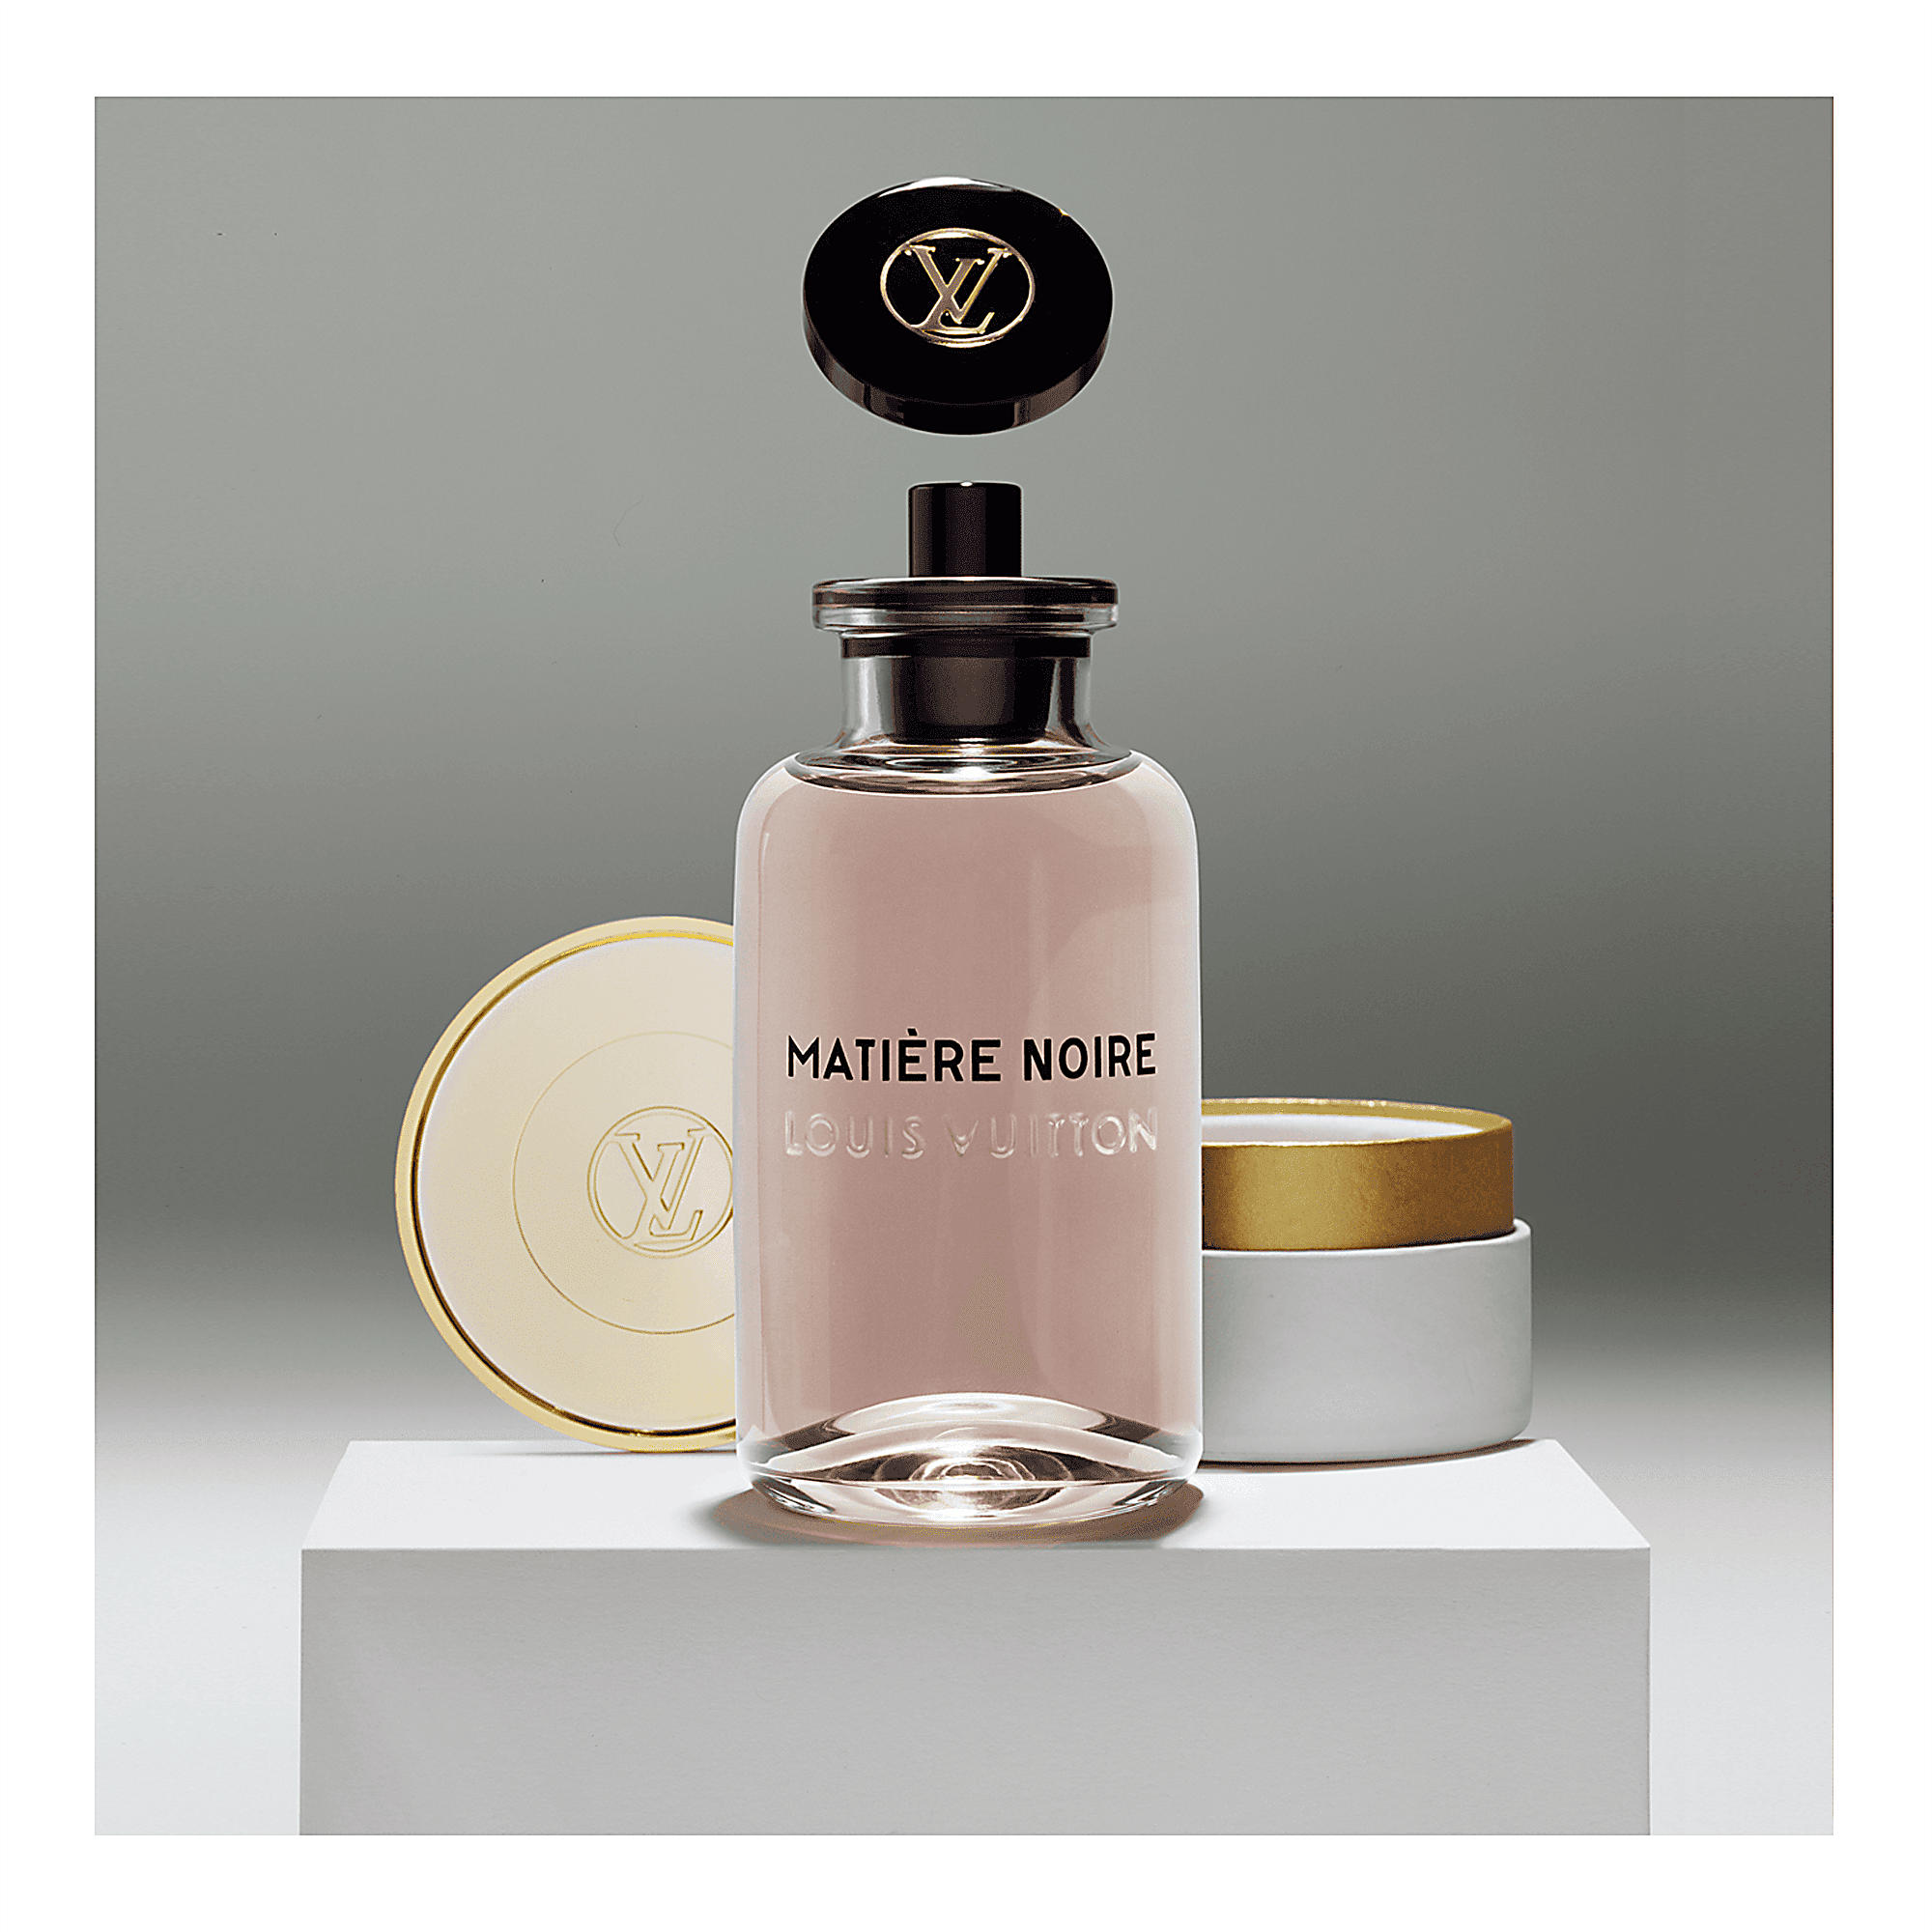 Discover Your Louis Vuitton Les Parfums Scent At Louis Vuitton KLCC